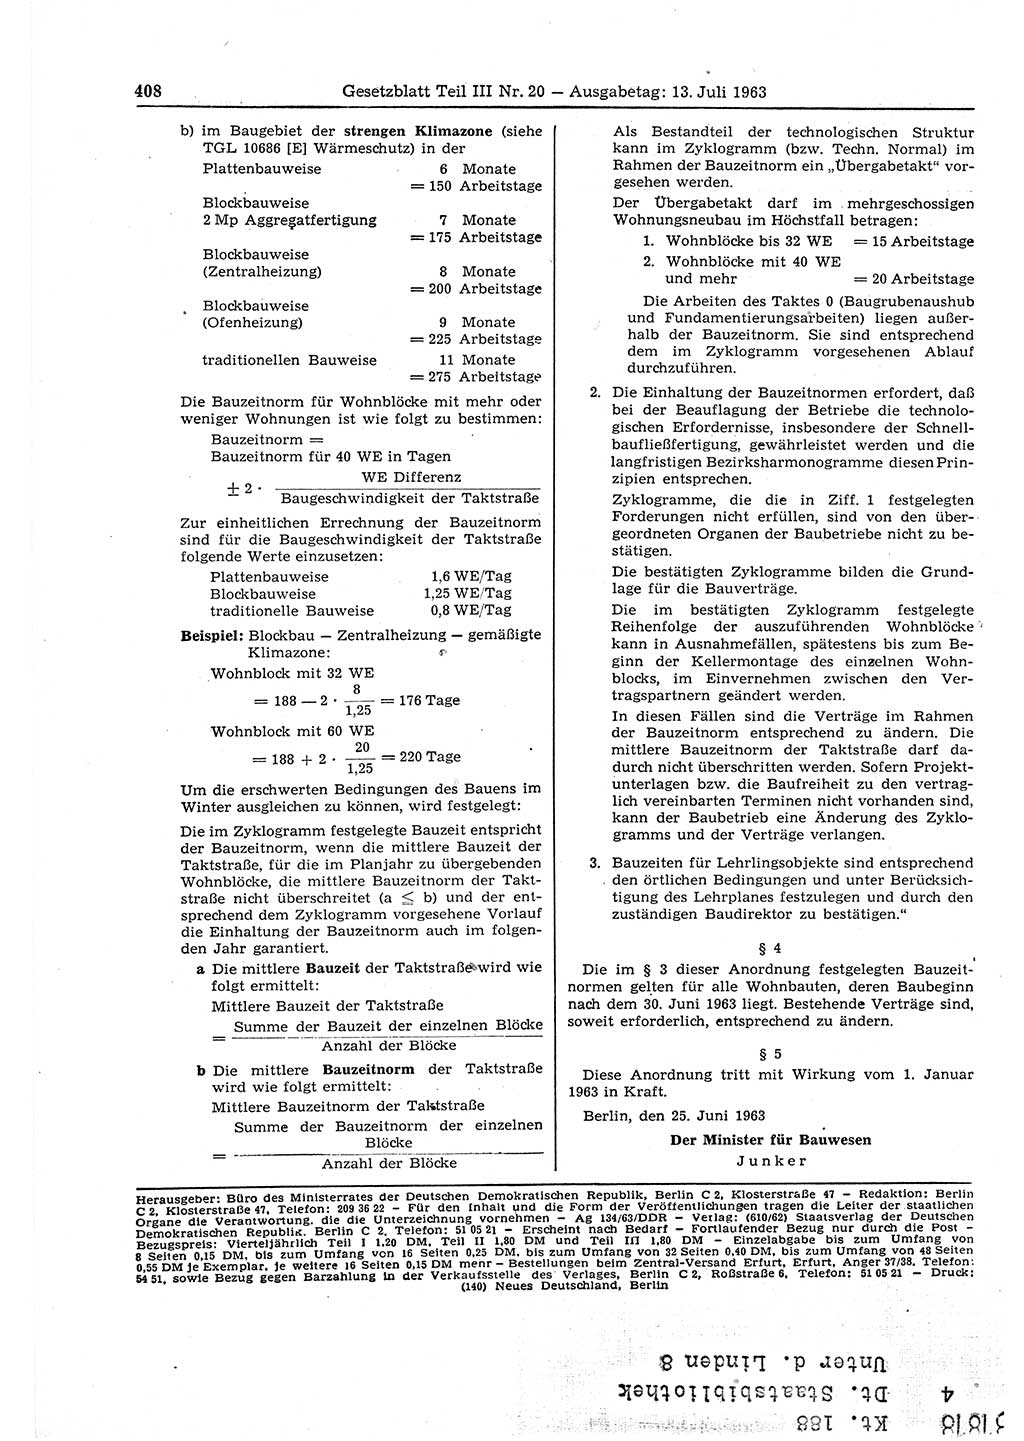 Gesetzblatt (GBl.) der Deutschen Demokratischen Republik (DDR) Teil ⅠⅠⅠ 1963, Seite 408 (GBl. DDR ⅠⅠⅠ 1963, S. 408)